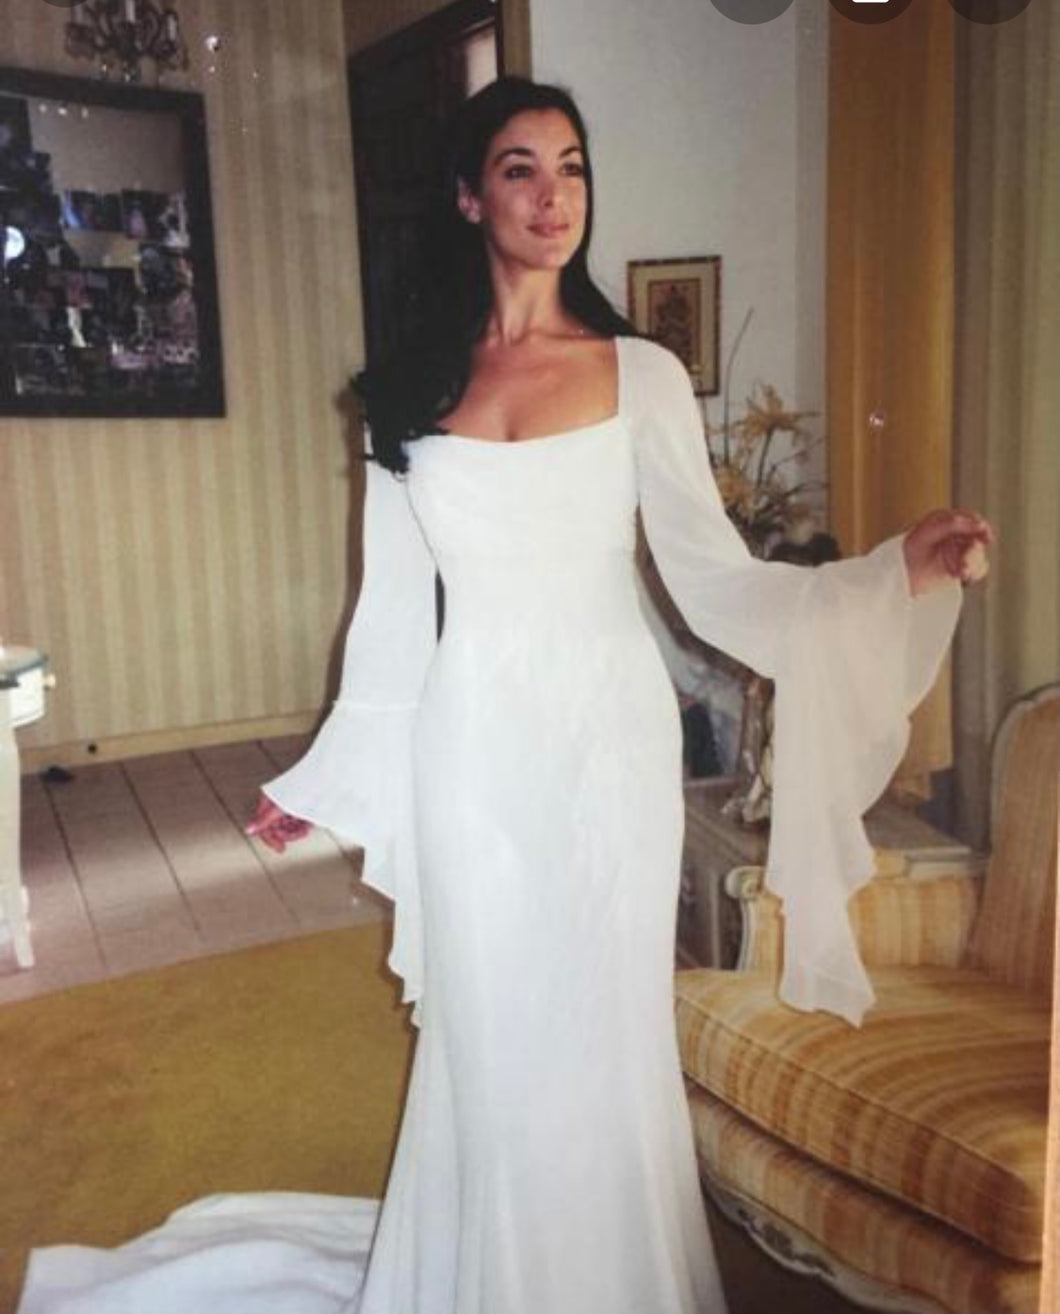 Ian Stuart '9855' wedding dress size-04 NEW